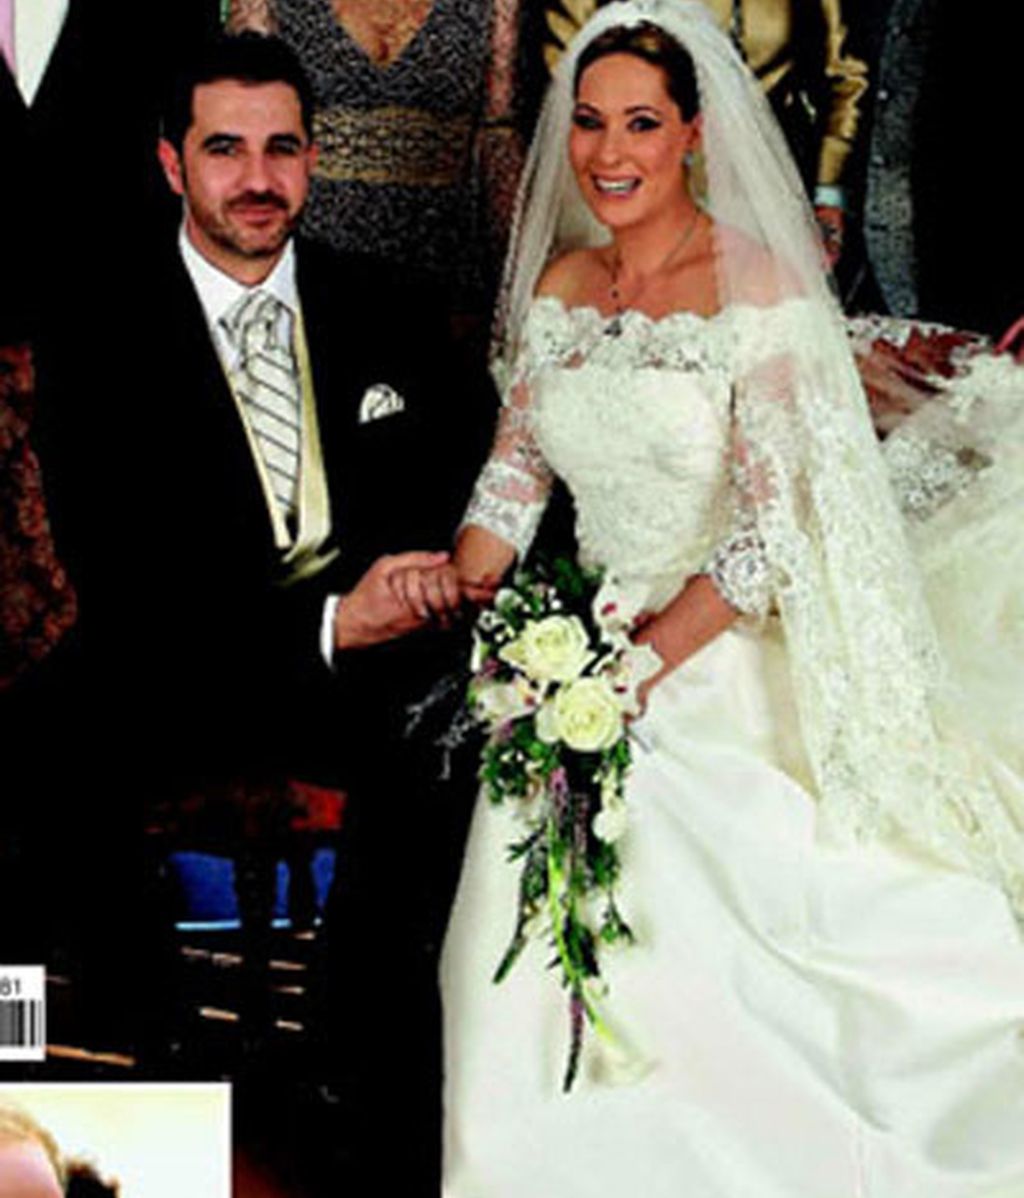 La boda de Chayo, los detalles de la portada de Hola